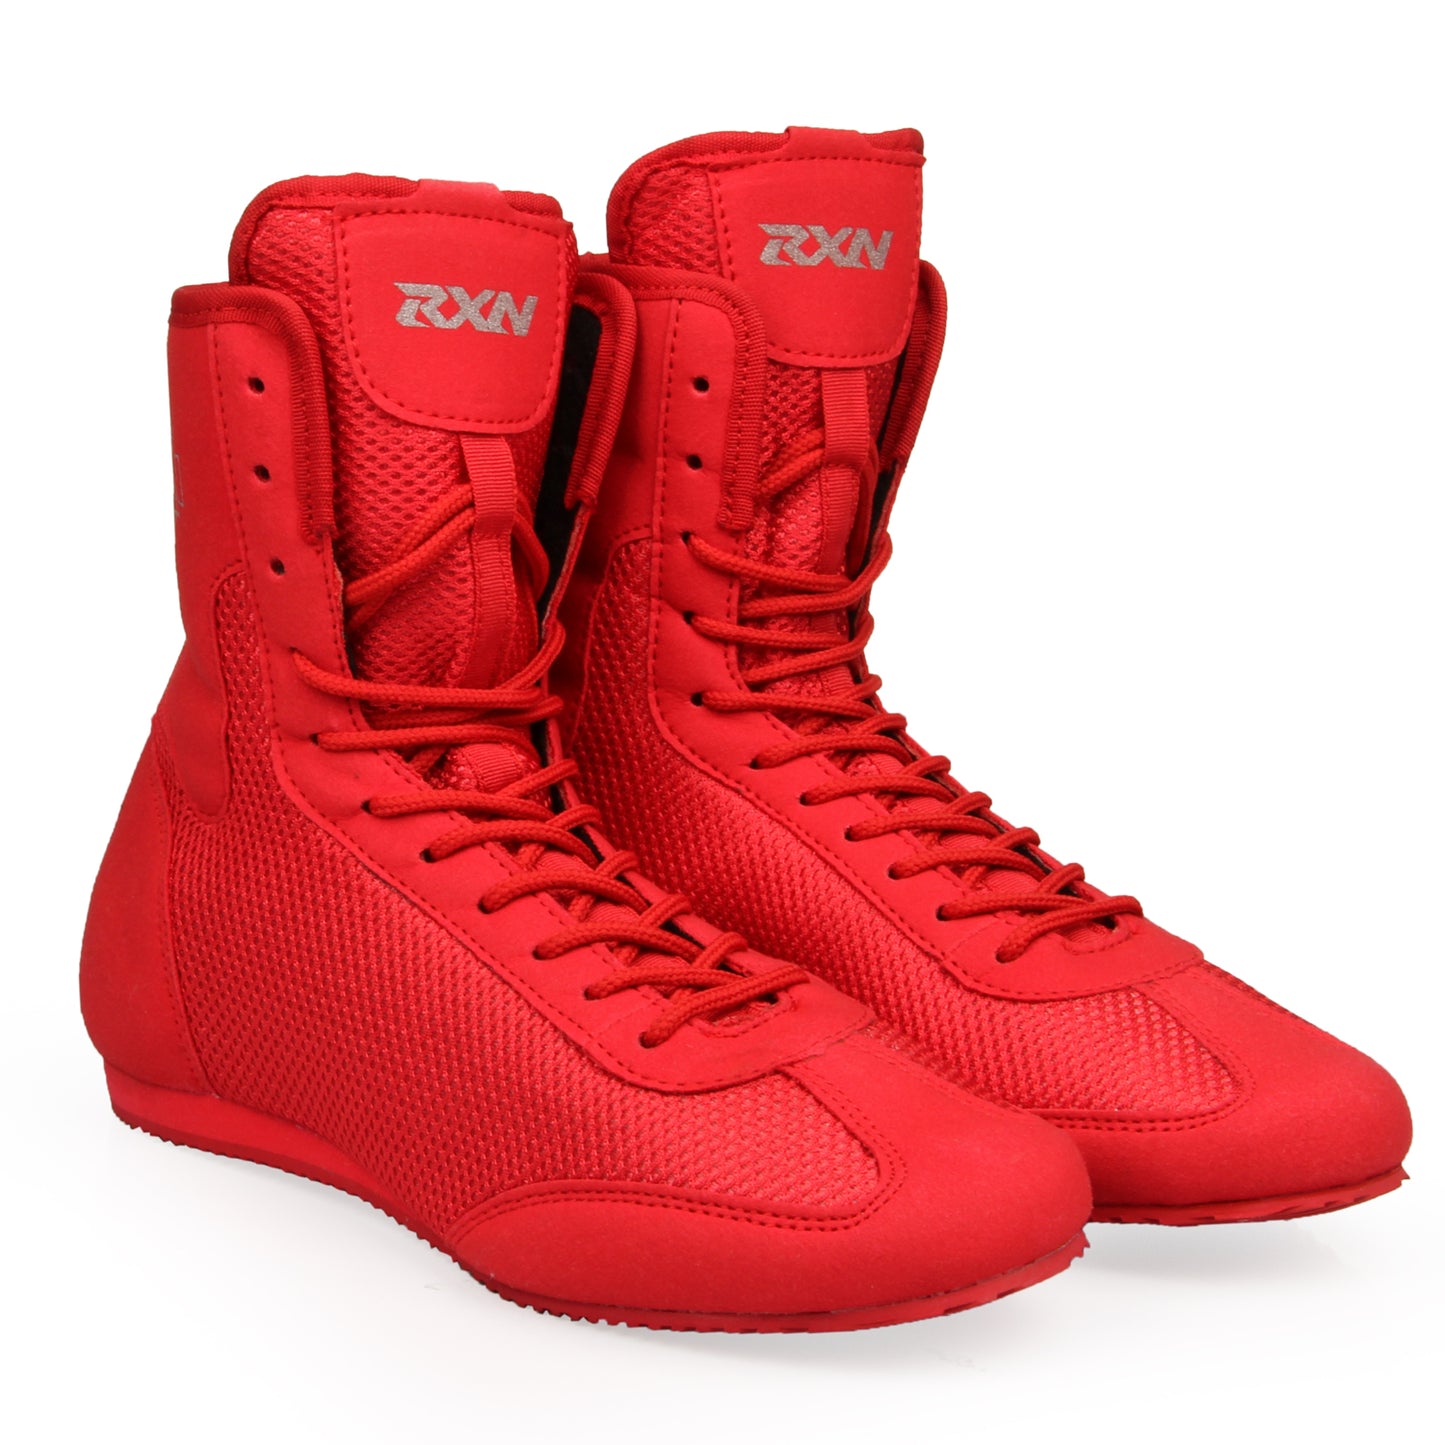 RXN Boxing Shoes BX-17